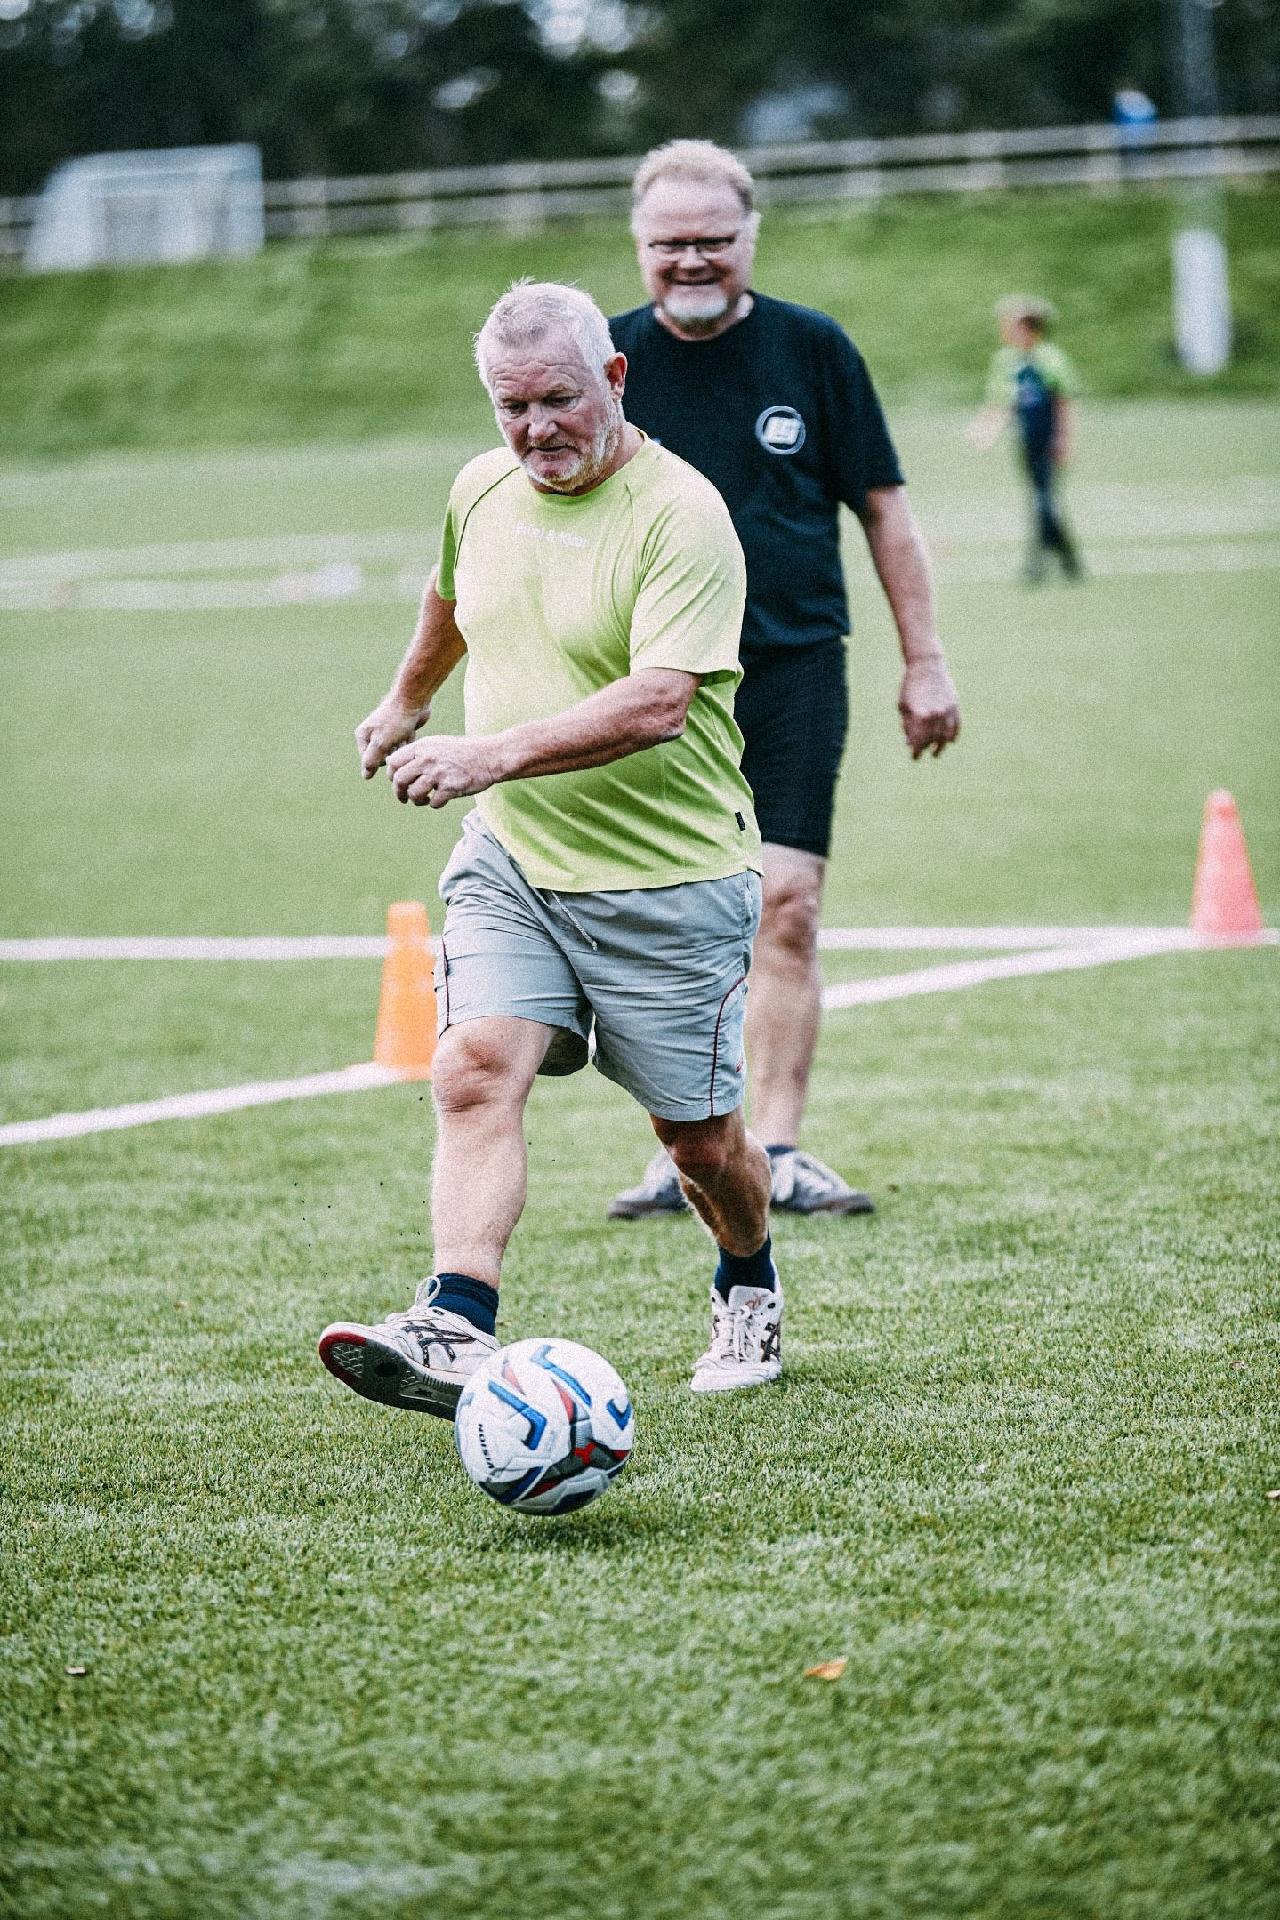 Jogar futebol melhora saúde cardiovascular e reduz gordura